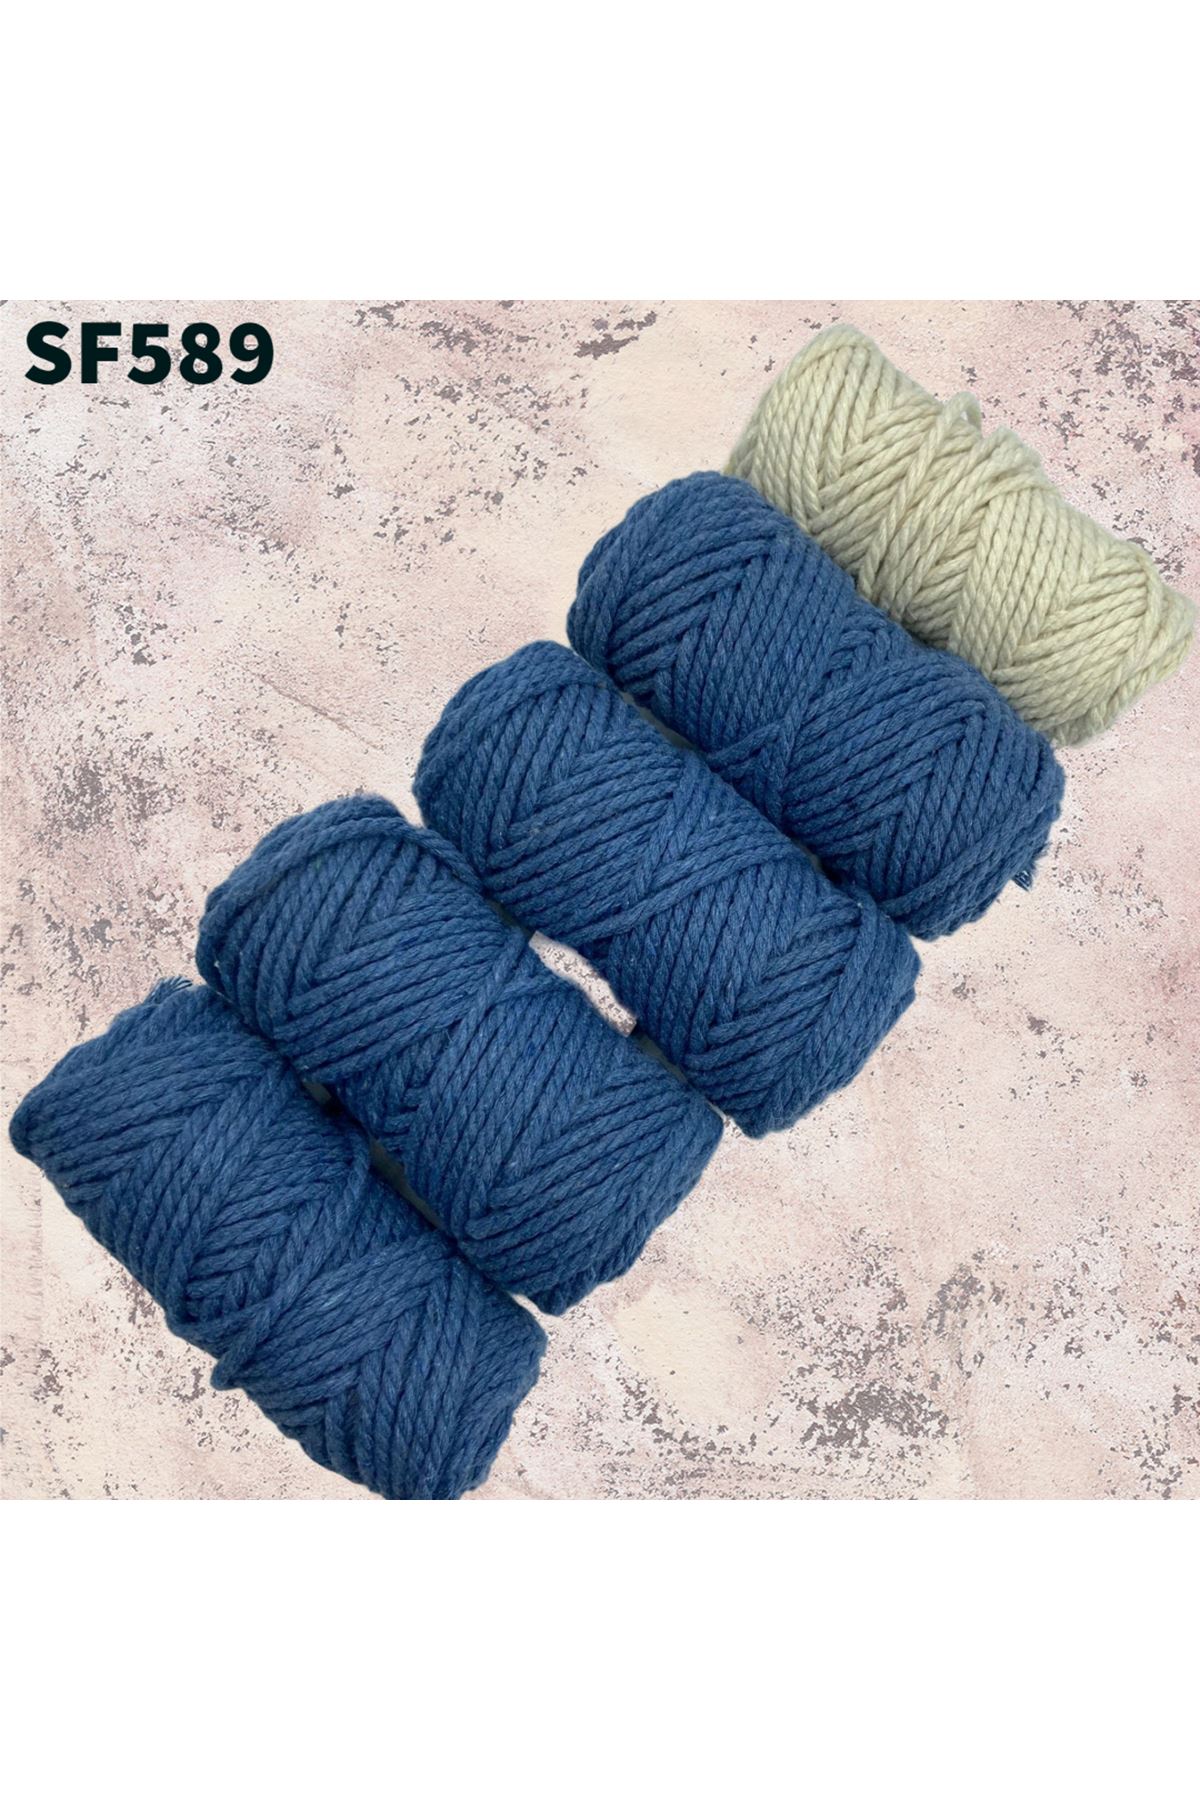 Stok Fazlası Bükümlü Cotton Makrome Mix 450 Gram SF589